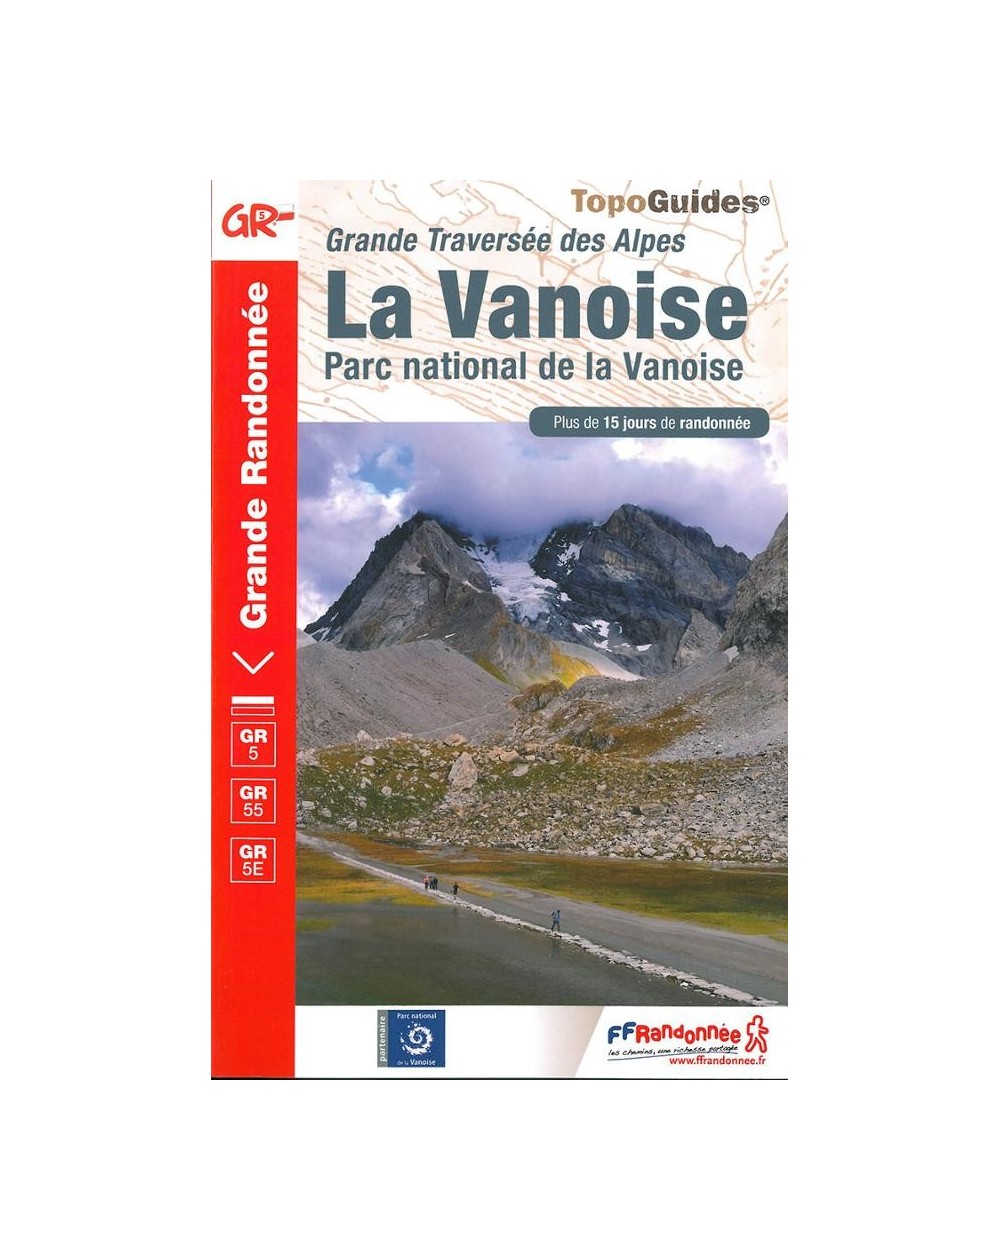 GR5 - Grande Traversée des Alpes - La Vanoise | Topoguide 